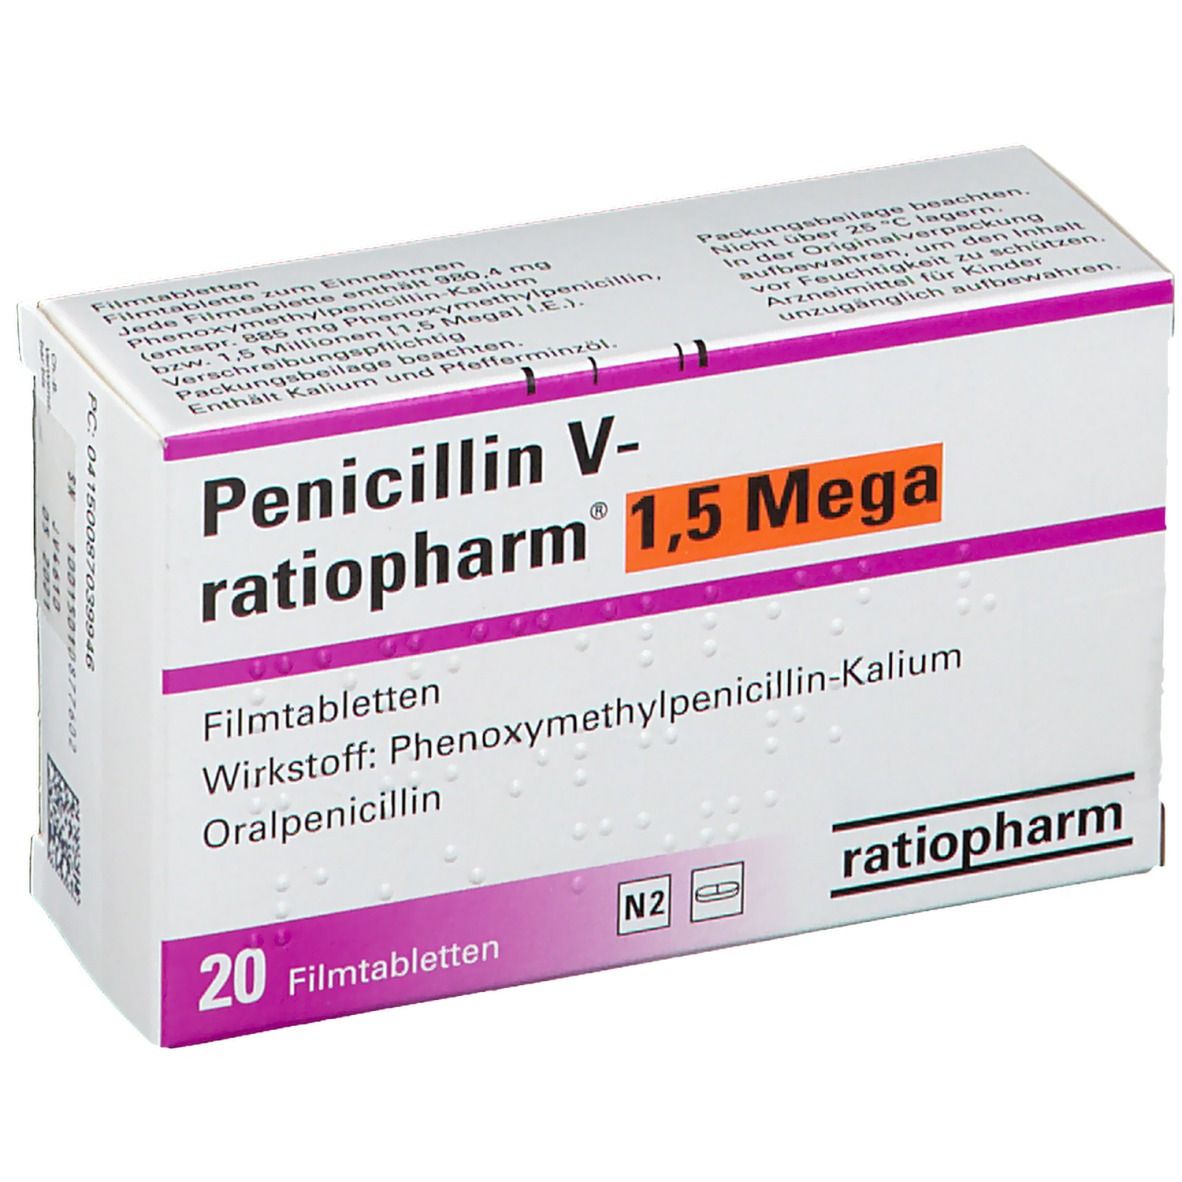 5 stada mega nebenwirkungen 1 penicillin v PENICILLIN V